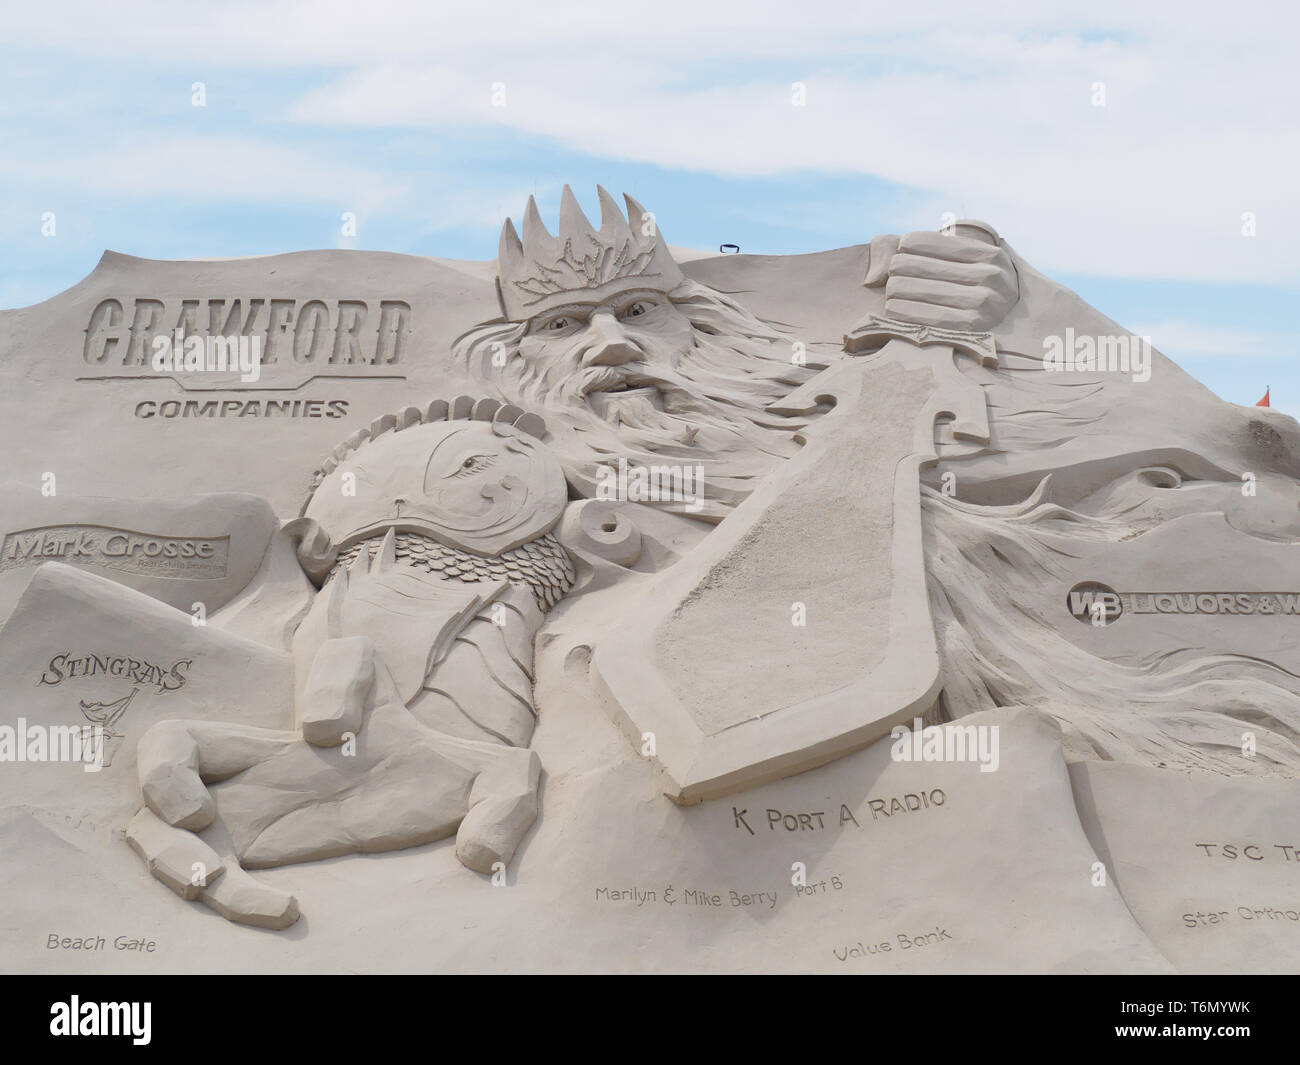 Brandissant une épée figure domine l'une des grandes sculptures en sable à l'affiche au Texas 2019 Sandfest à Port Aransas, Texas USA. Banque D'Images